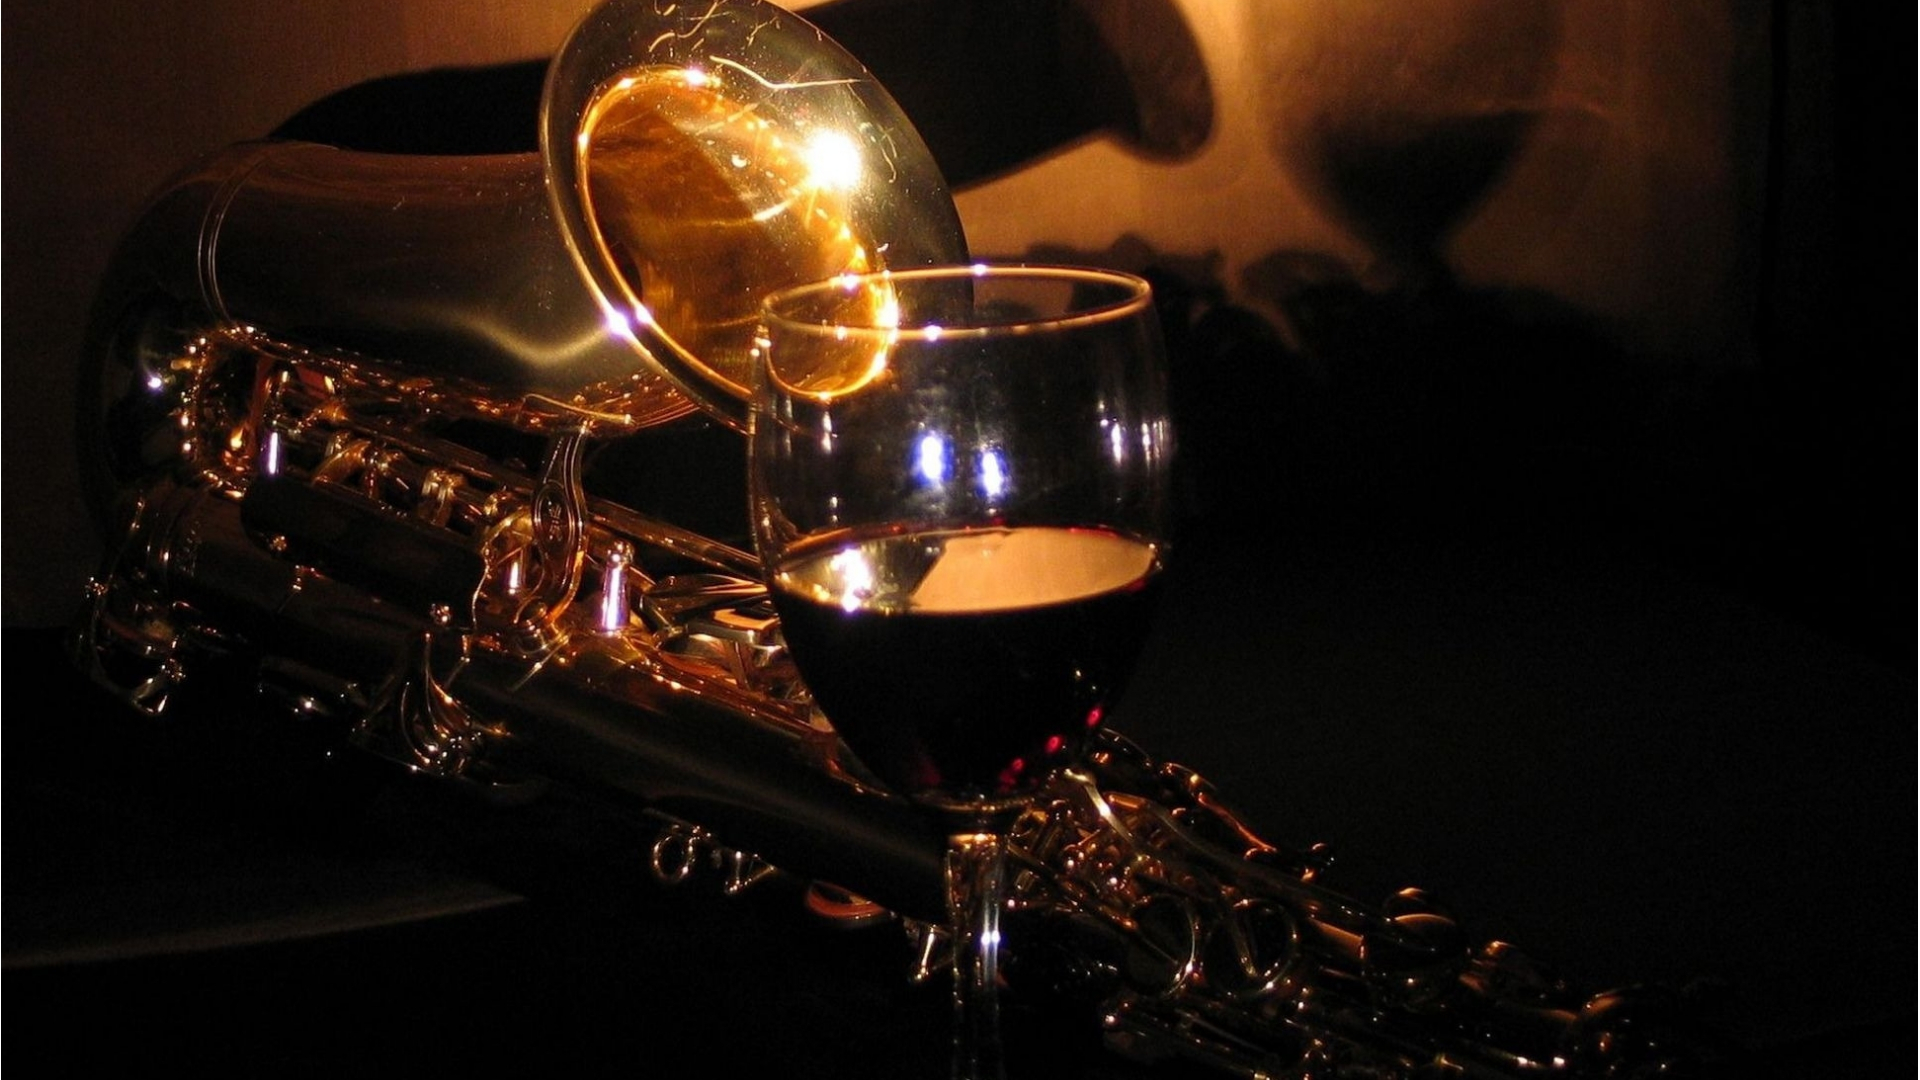 Música e vinho: os sons melhoram o sabor da bebida?